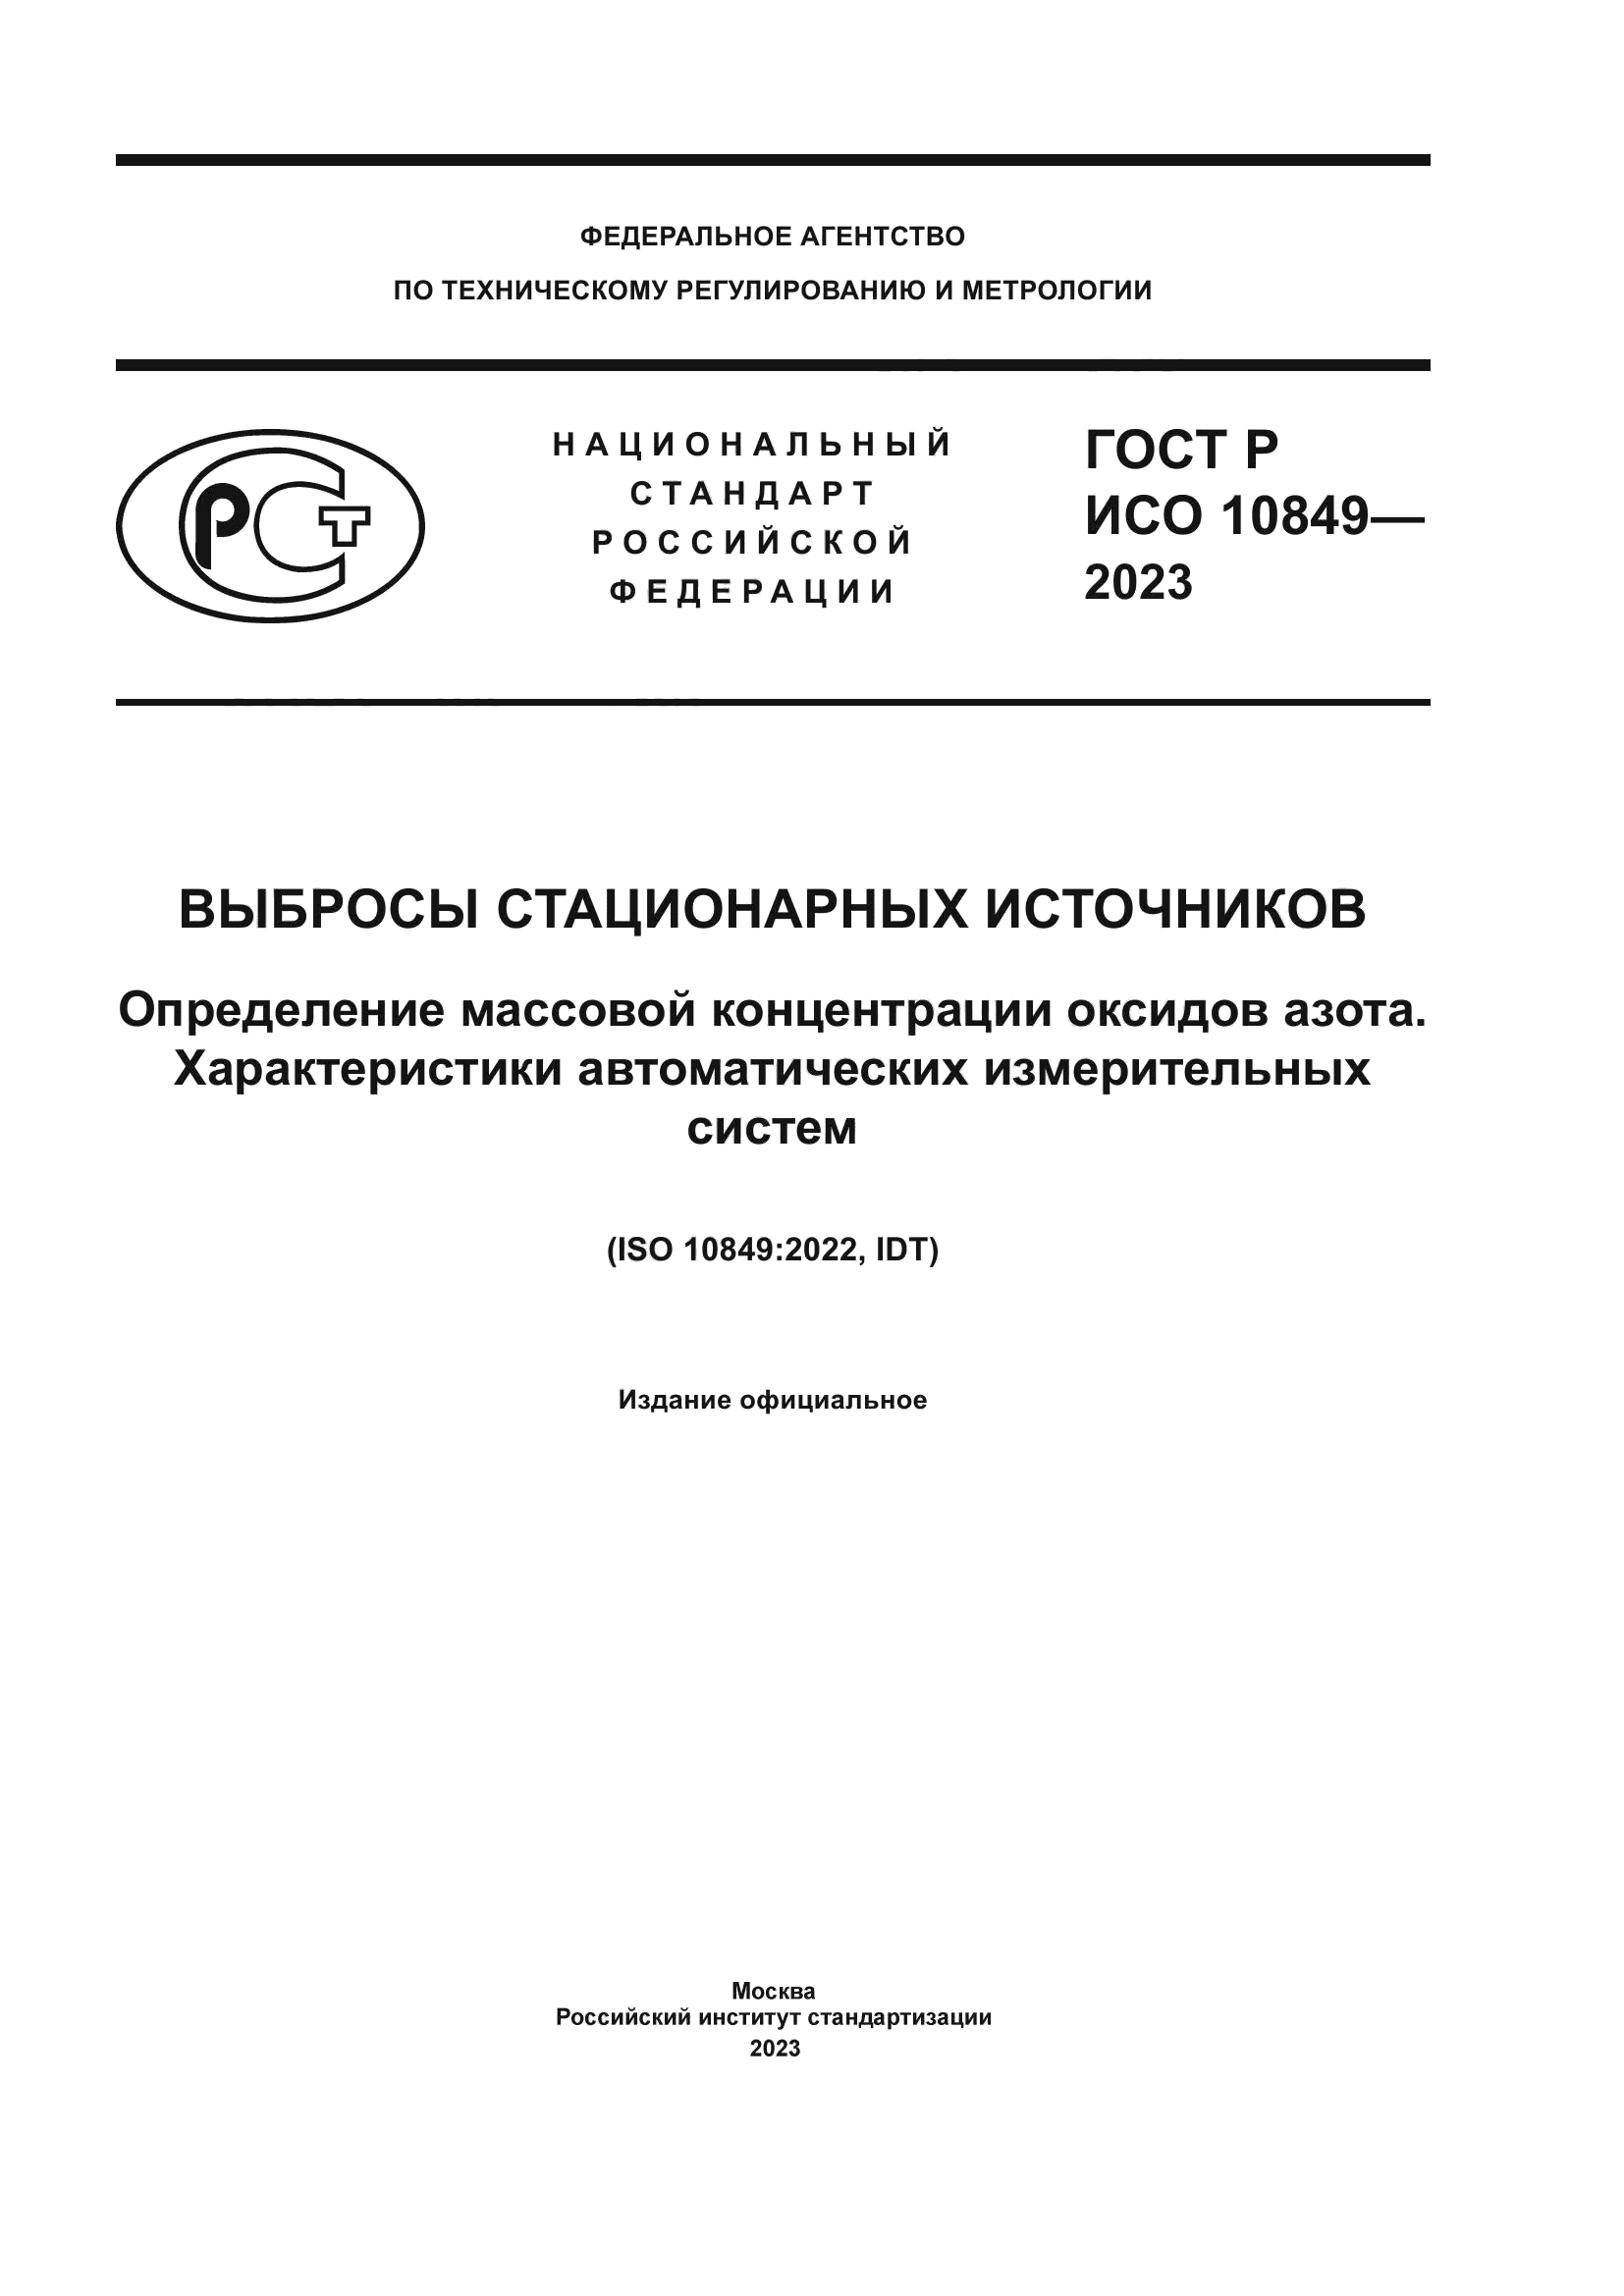 ГОСТ Р ИСО 10849-2023